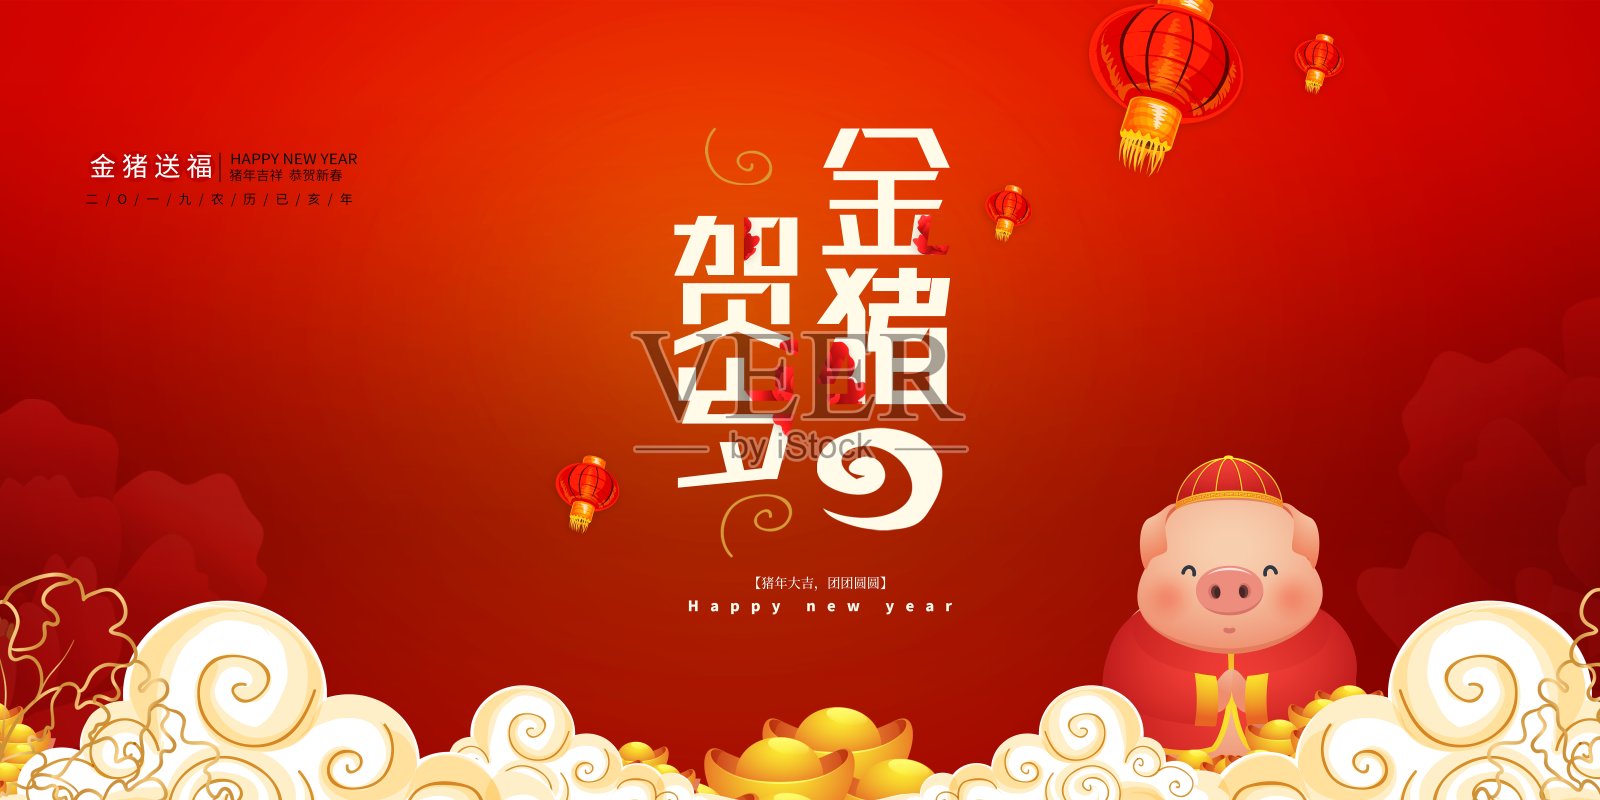 中国风金猪贺岁节日展板设计模板素材